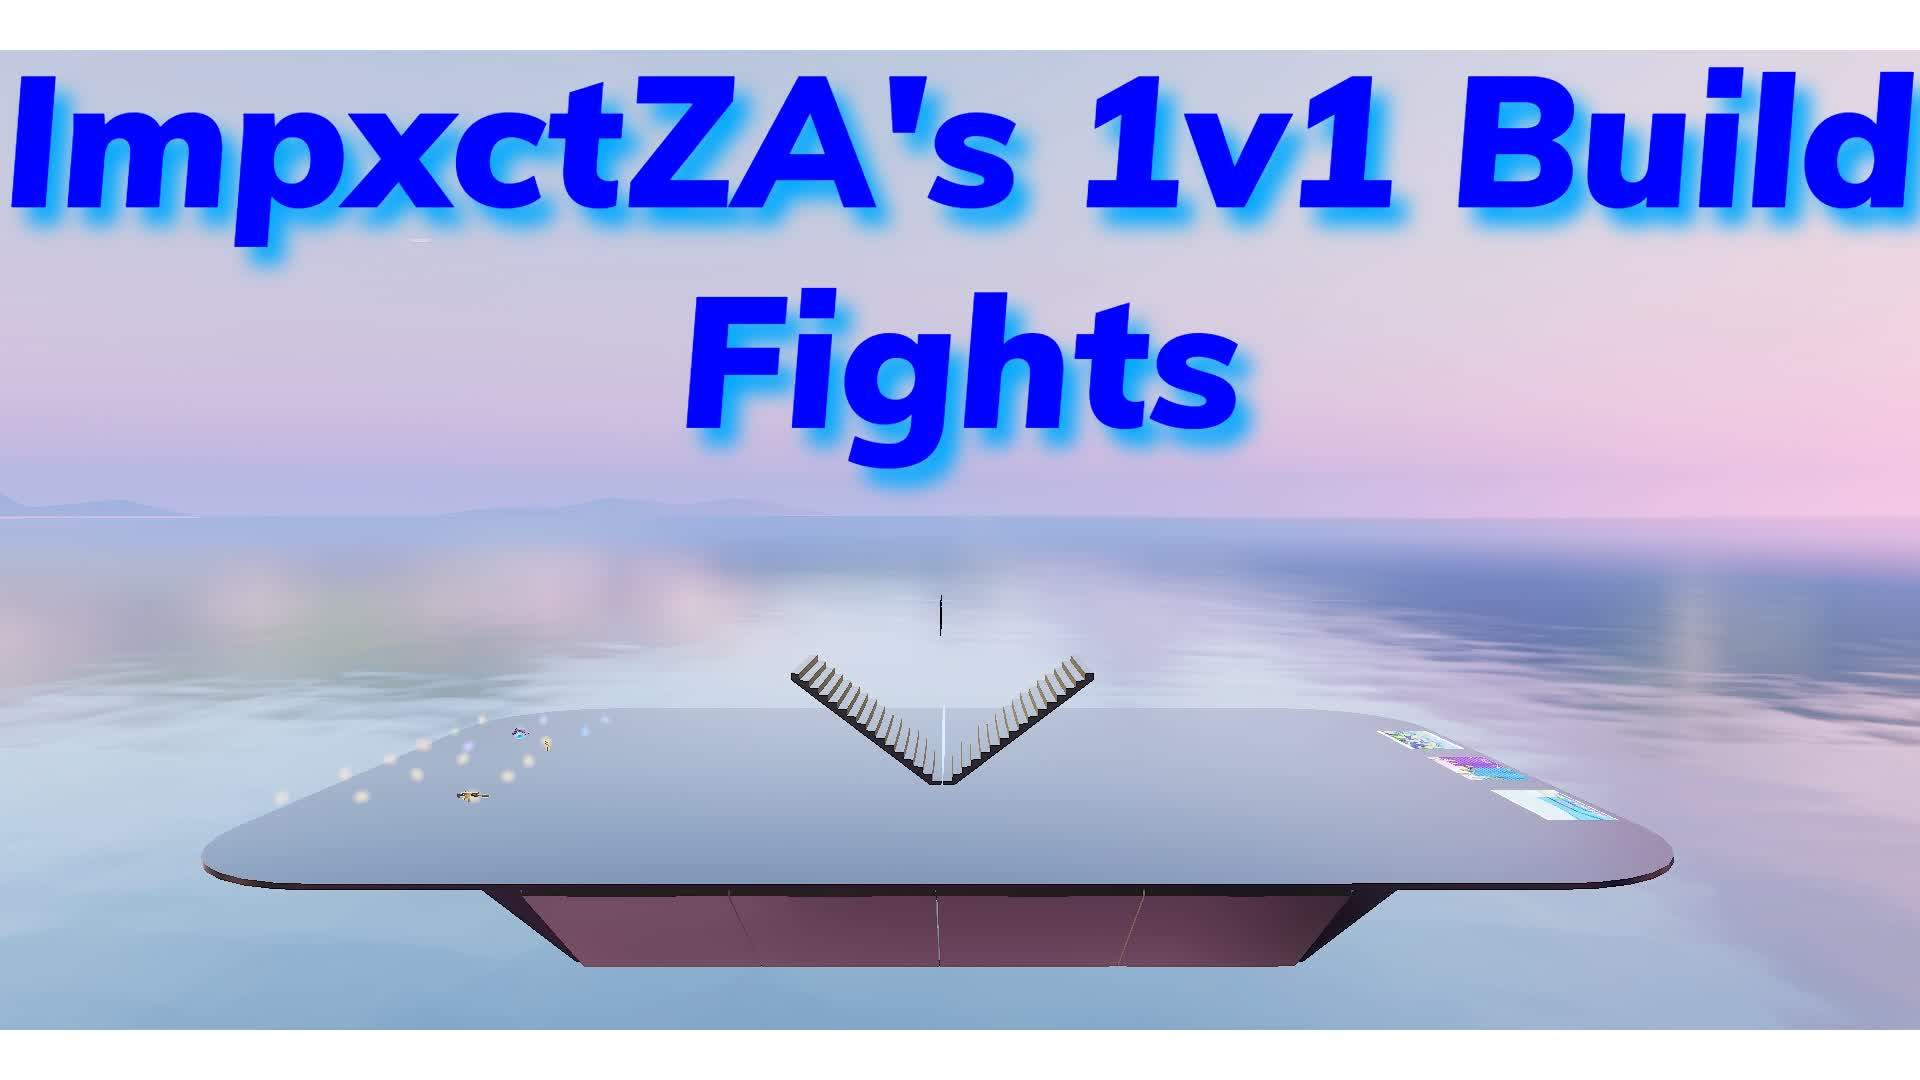 ImpxctZA's 1V1 BUILD FIGHTS